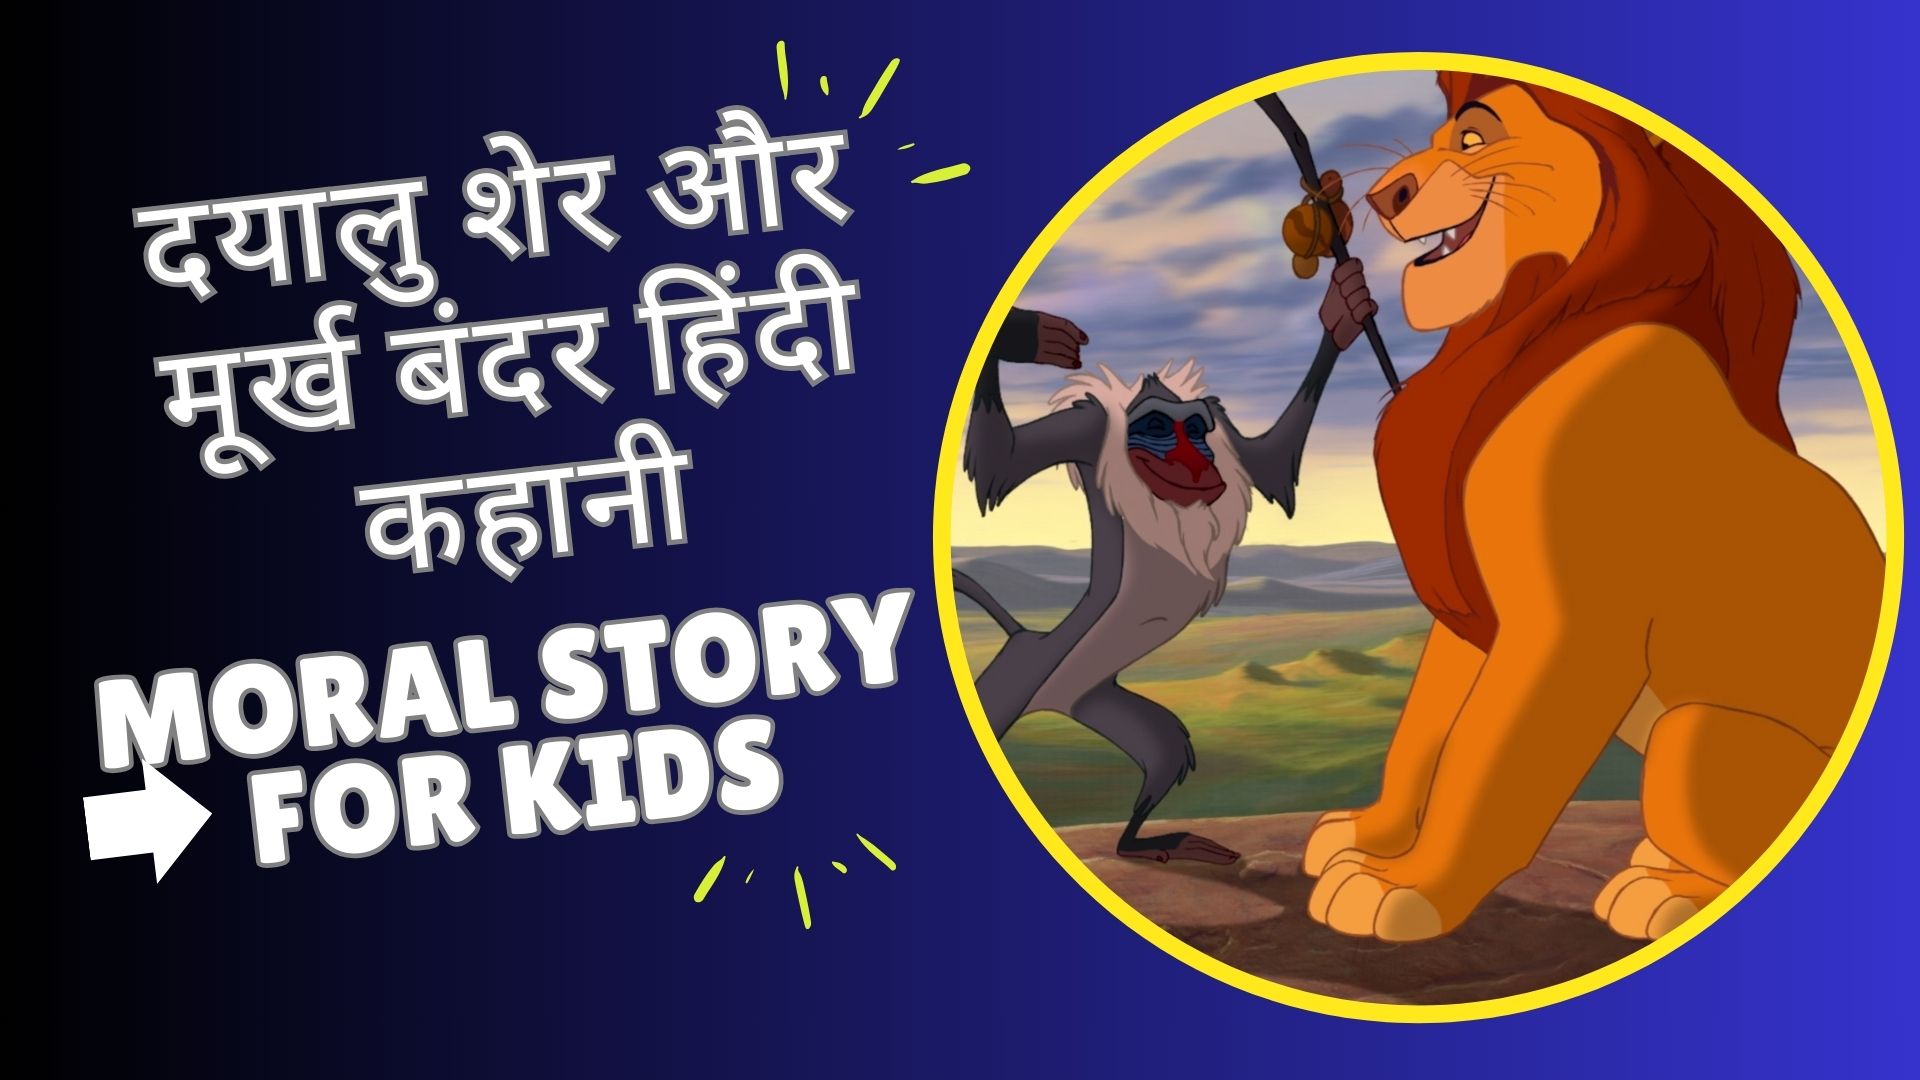 दयालु शेर और मूर्ख बंदर हिंदी कहानी | Kids Stories in Hindi